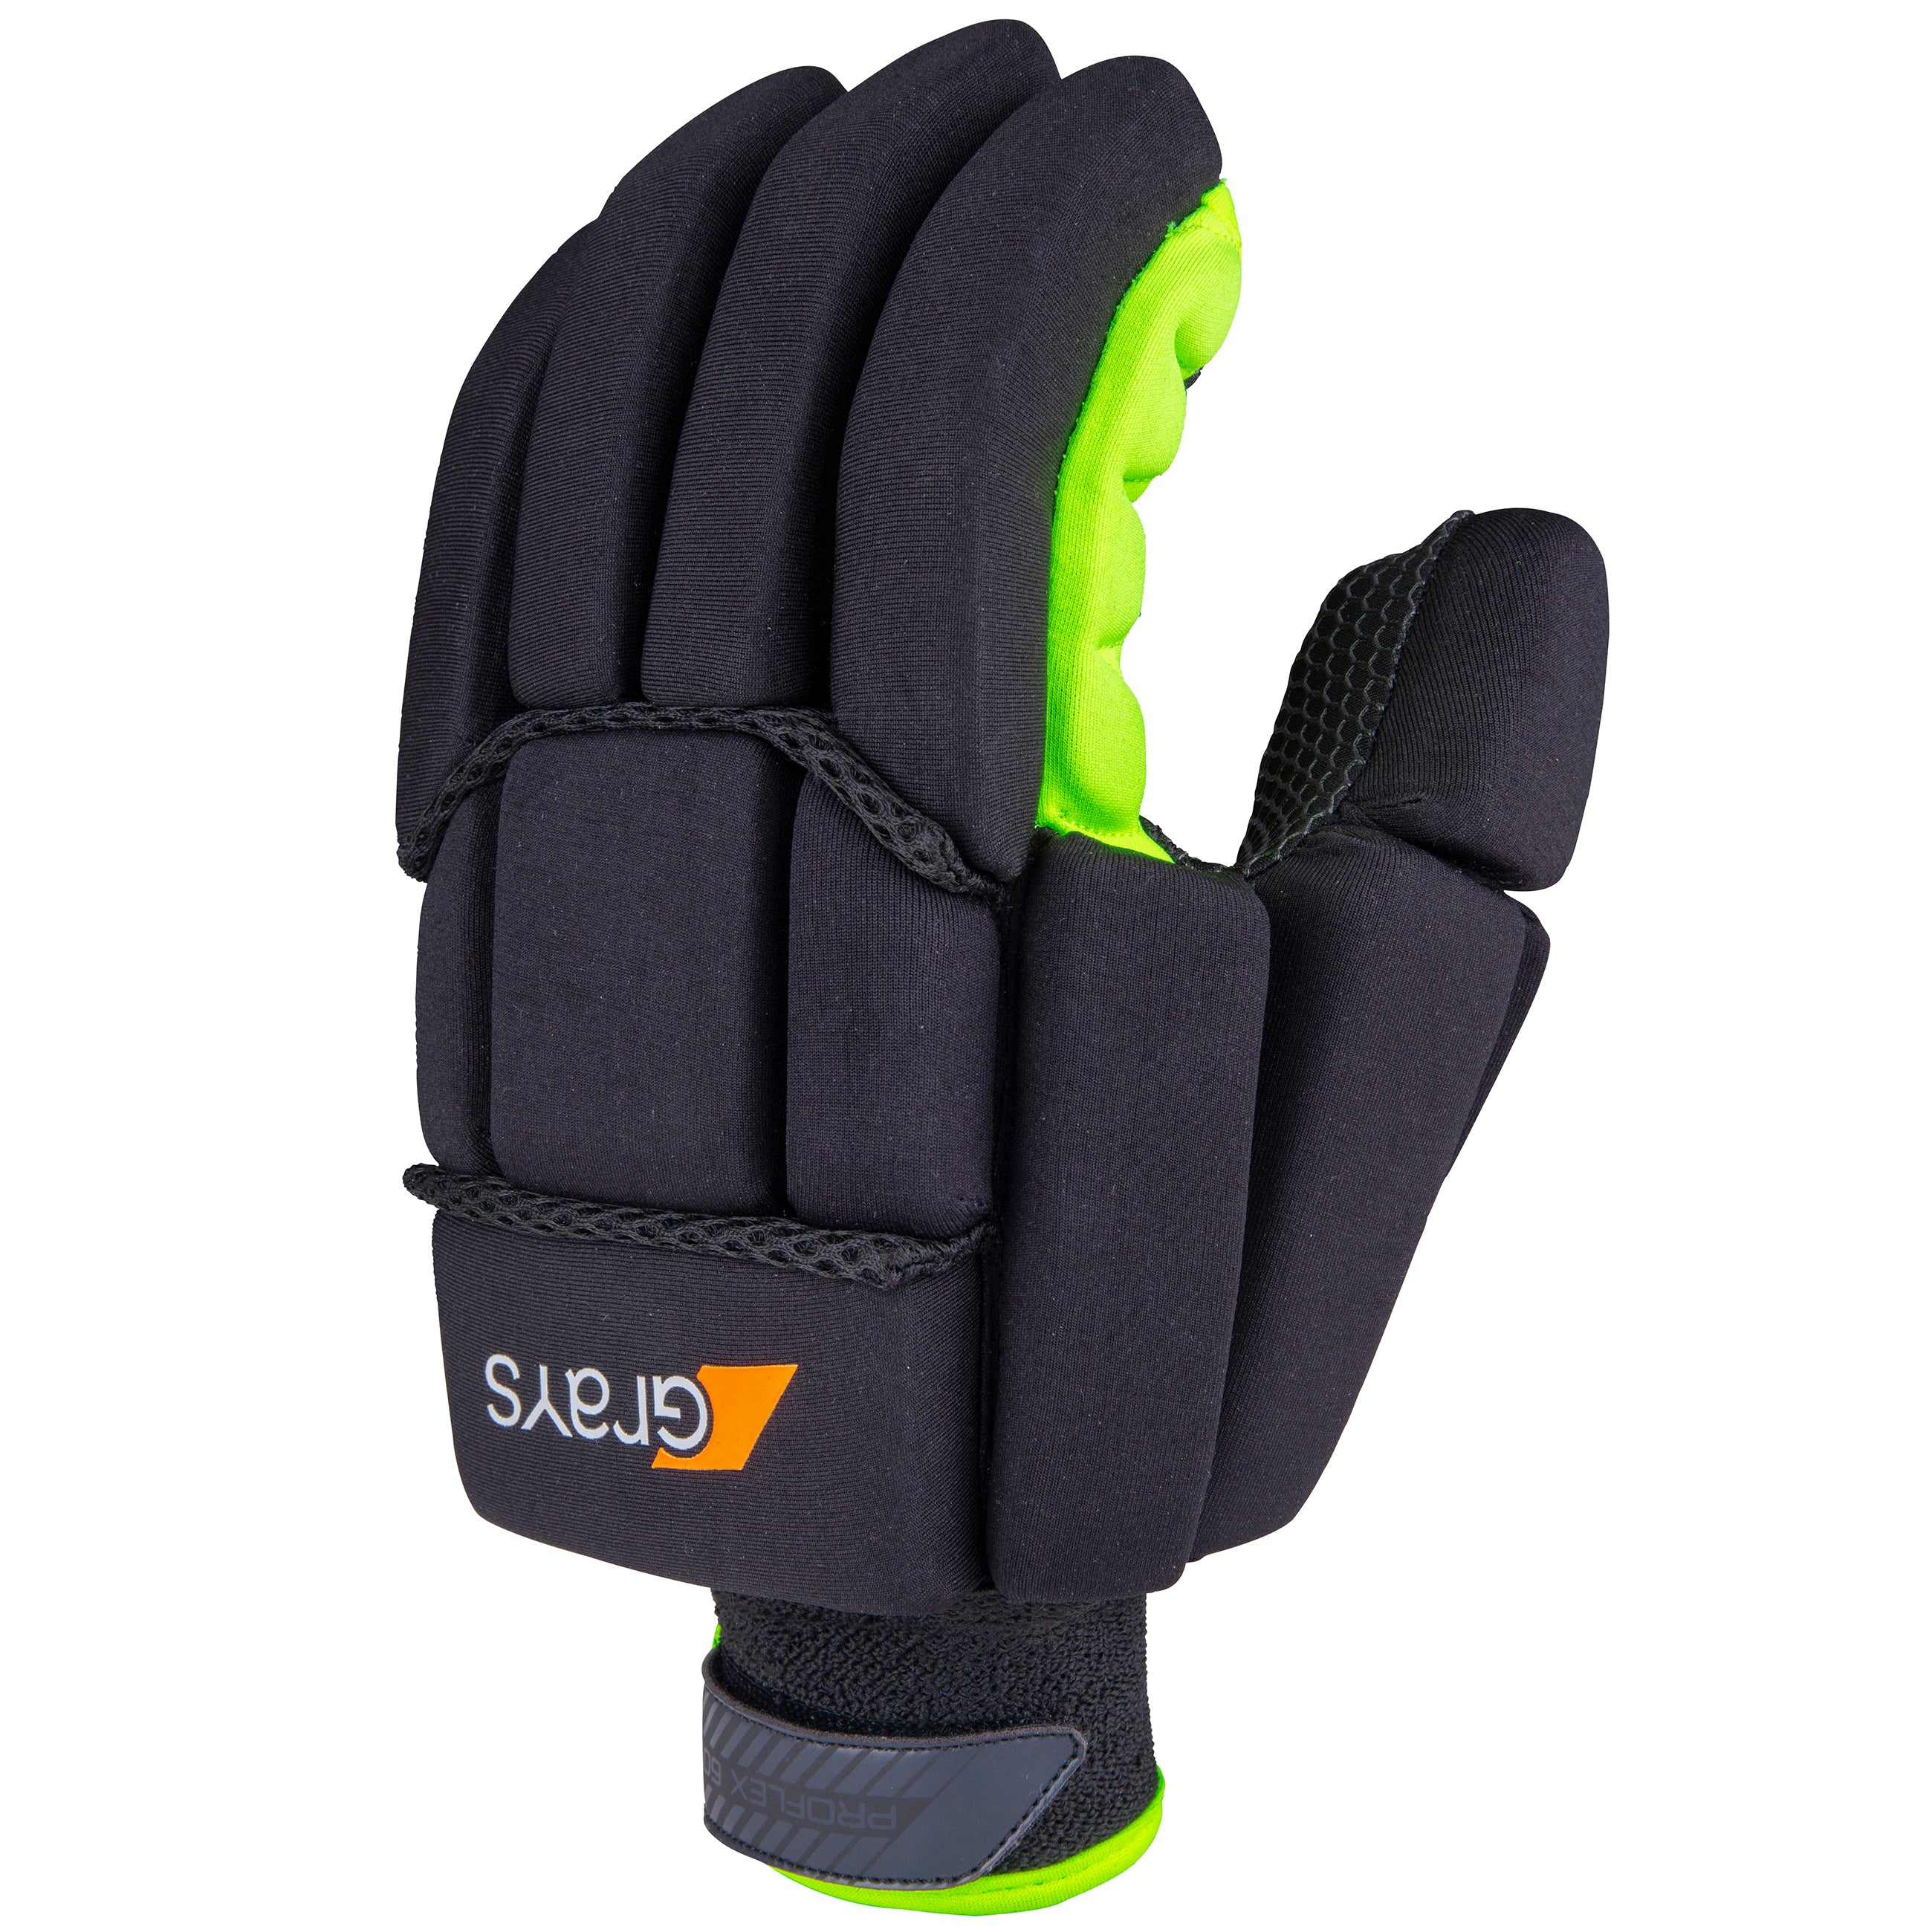 2600 HGBA20 6210605 Glove Proflex 1000 Black & Fluoro Yellow Main